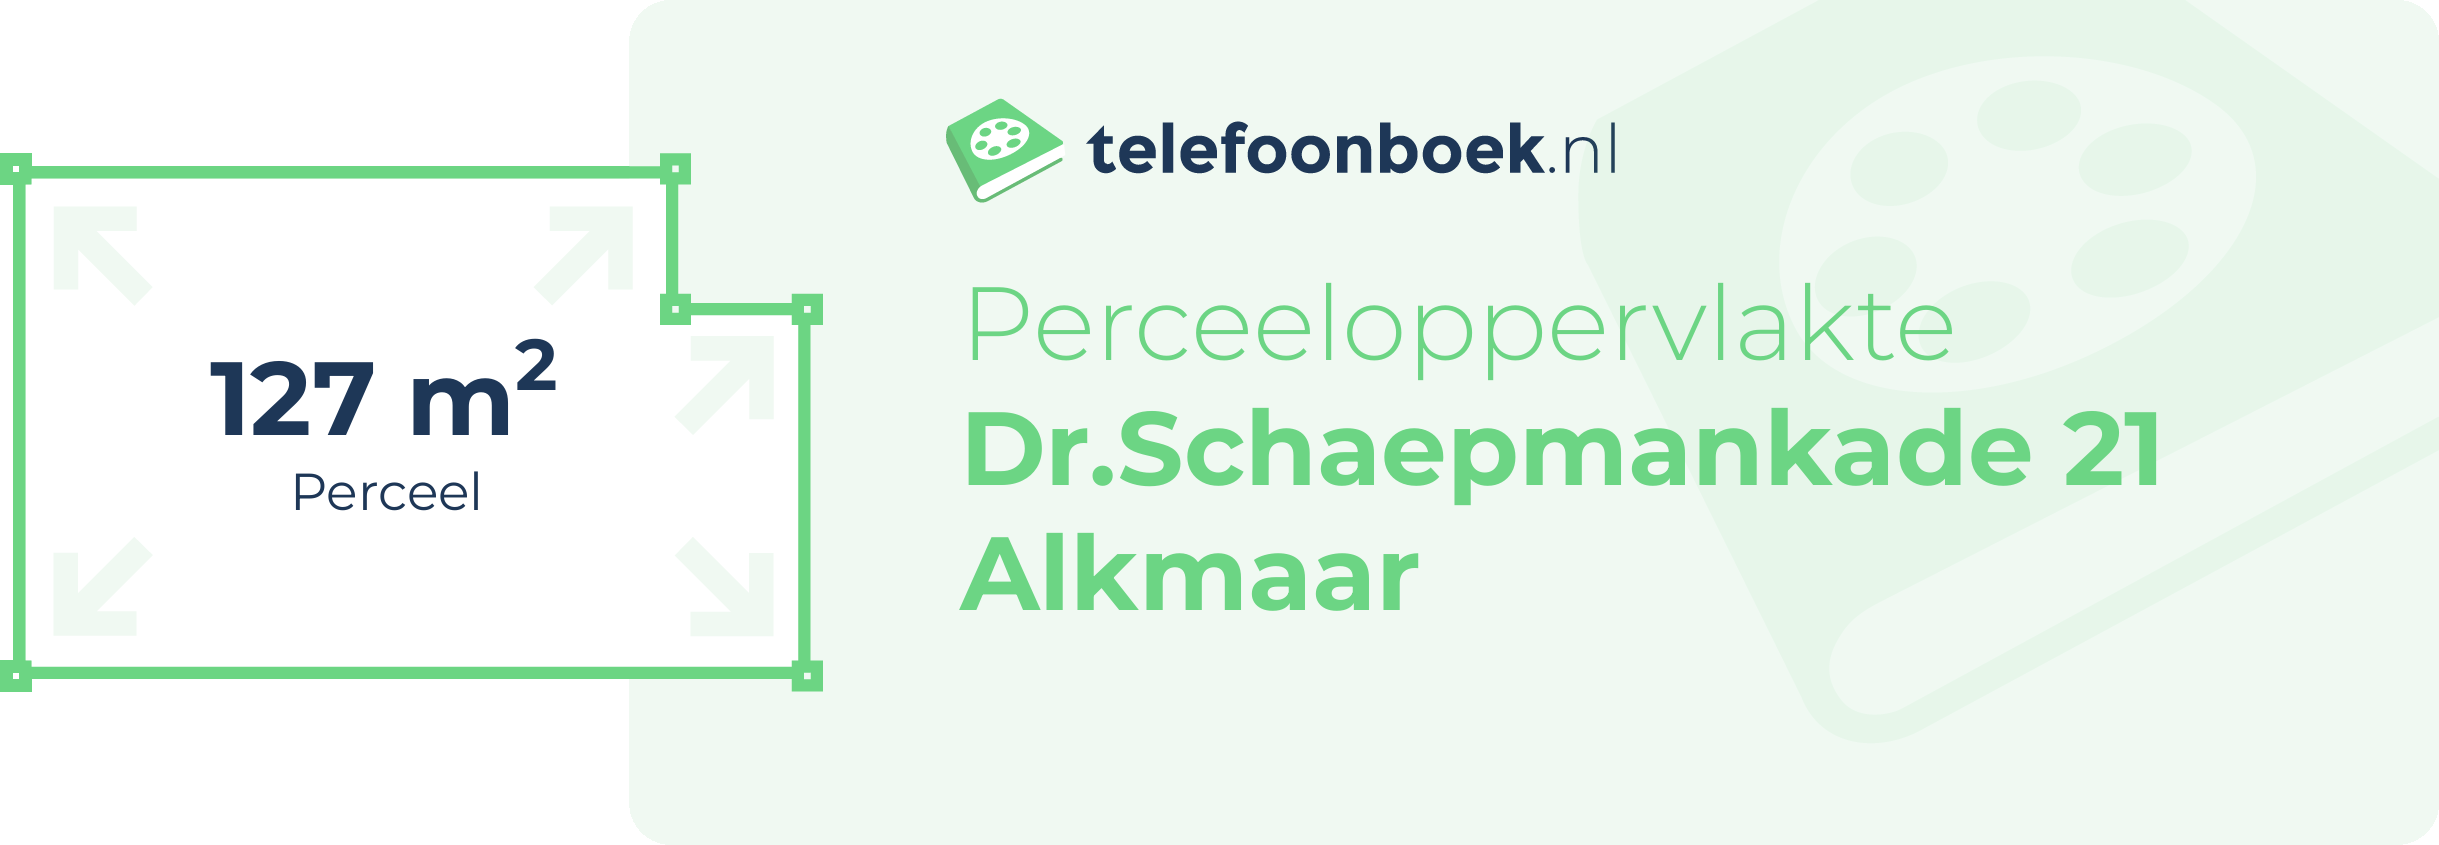 Perceeloppervlakte Dr.Schaepmankade 21 Alkmaar